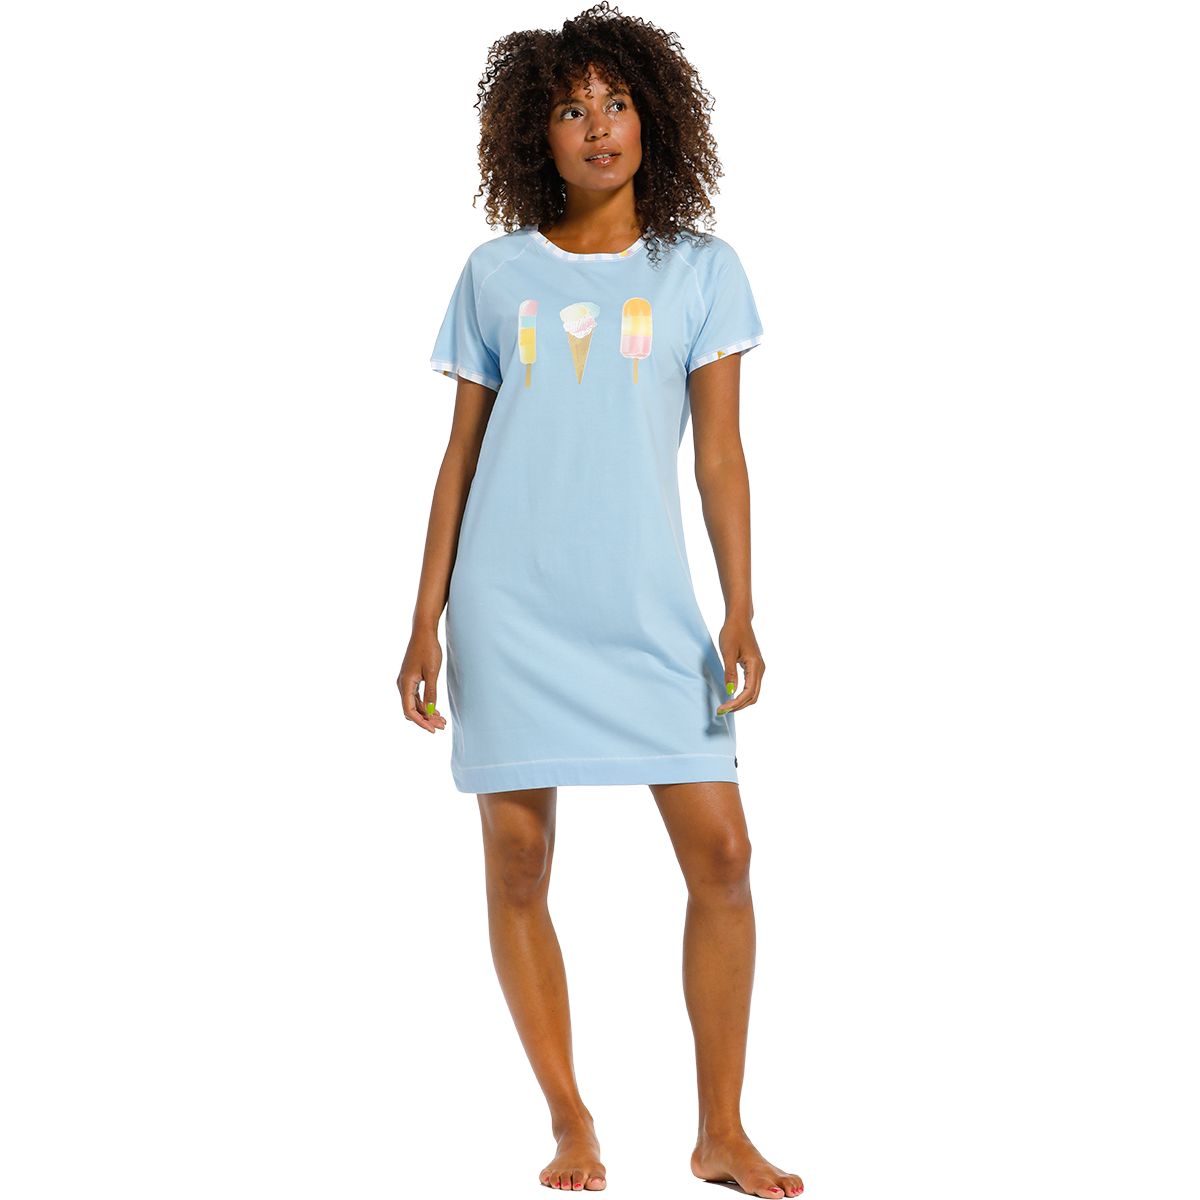 Kleding Dameskleding Pyjamas & Badjassen Nachthemden en tops One size blue sheer dress #575 